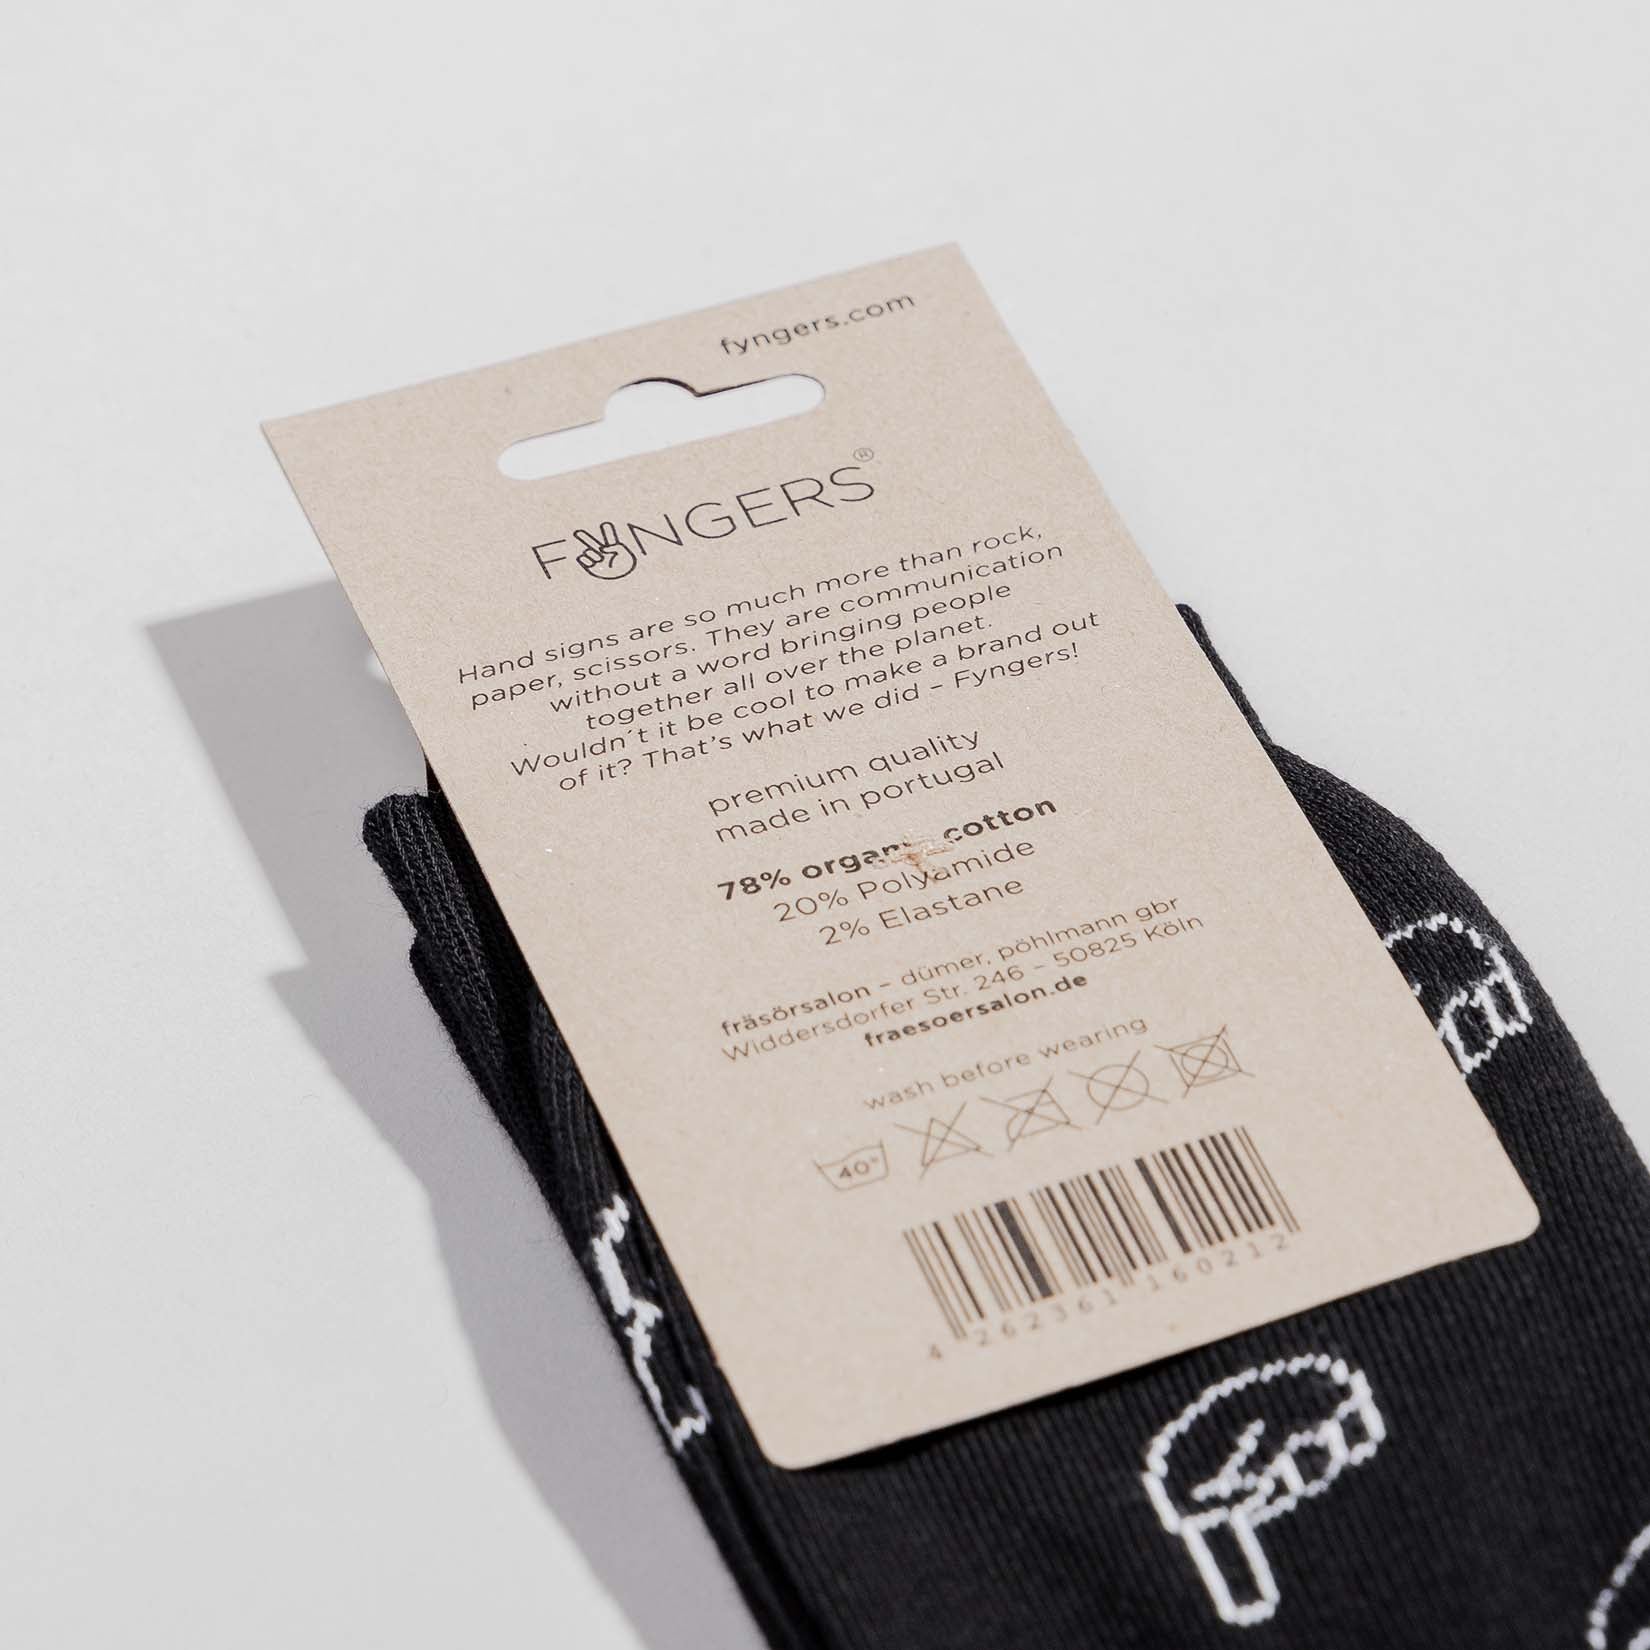 Fyngers Pattern - Premium Socken schwarz/weiß